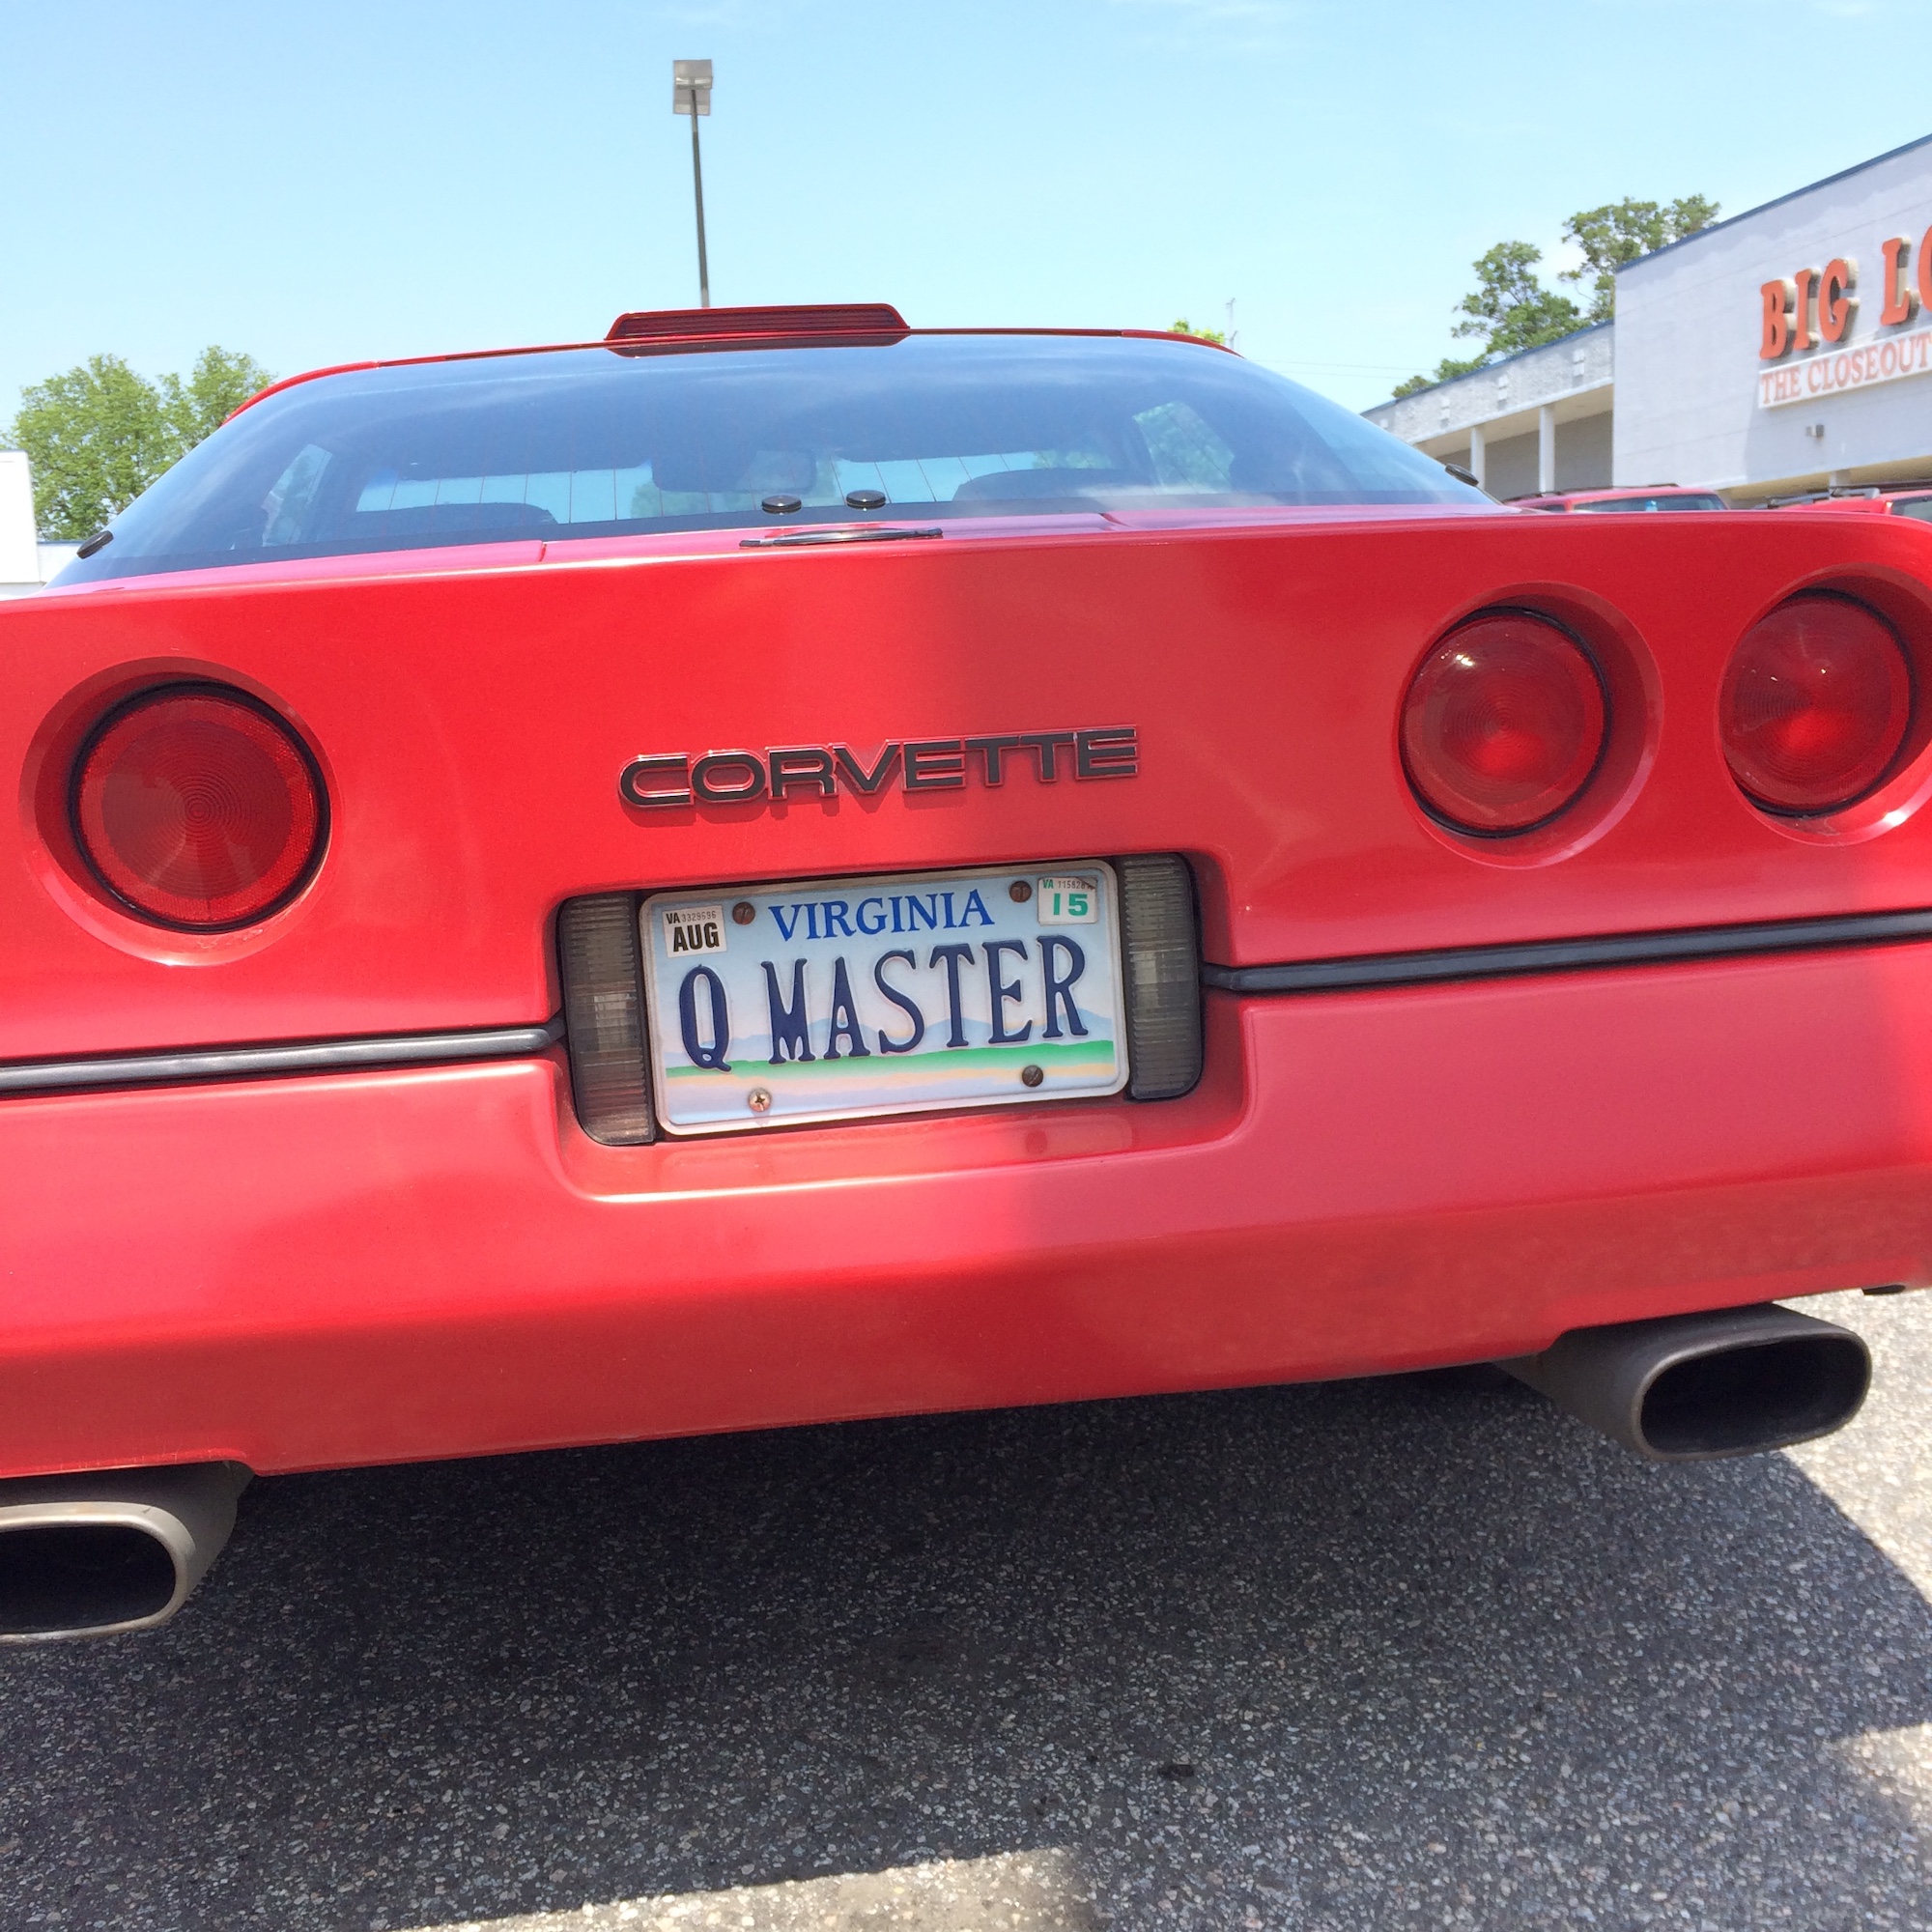 Q Master Corvette